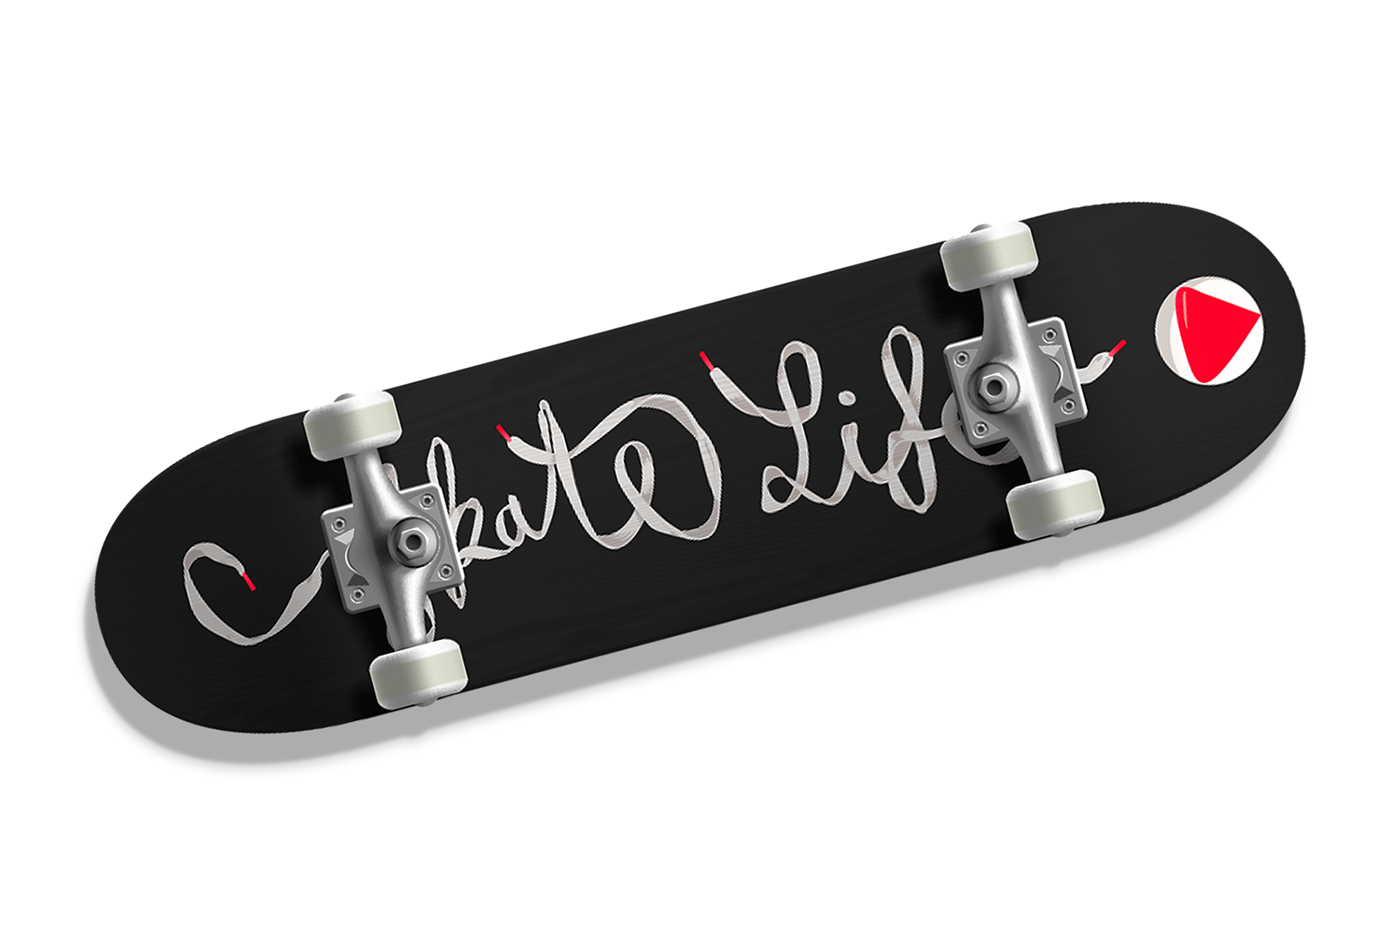 lettering skateboarding skate deck